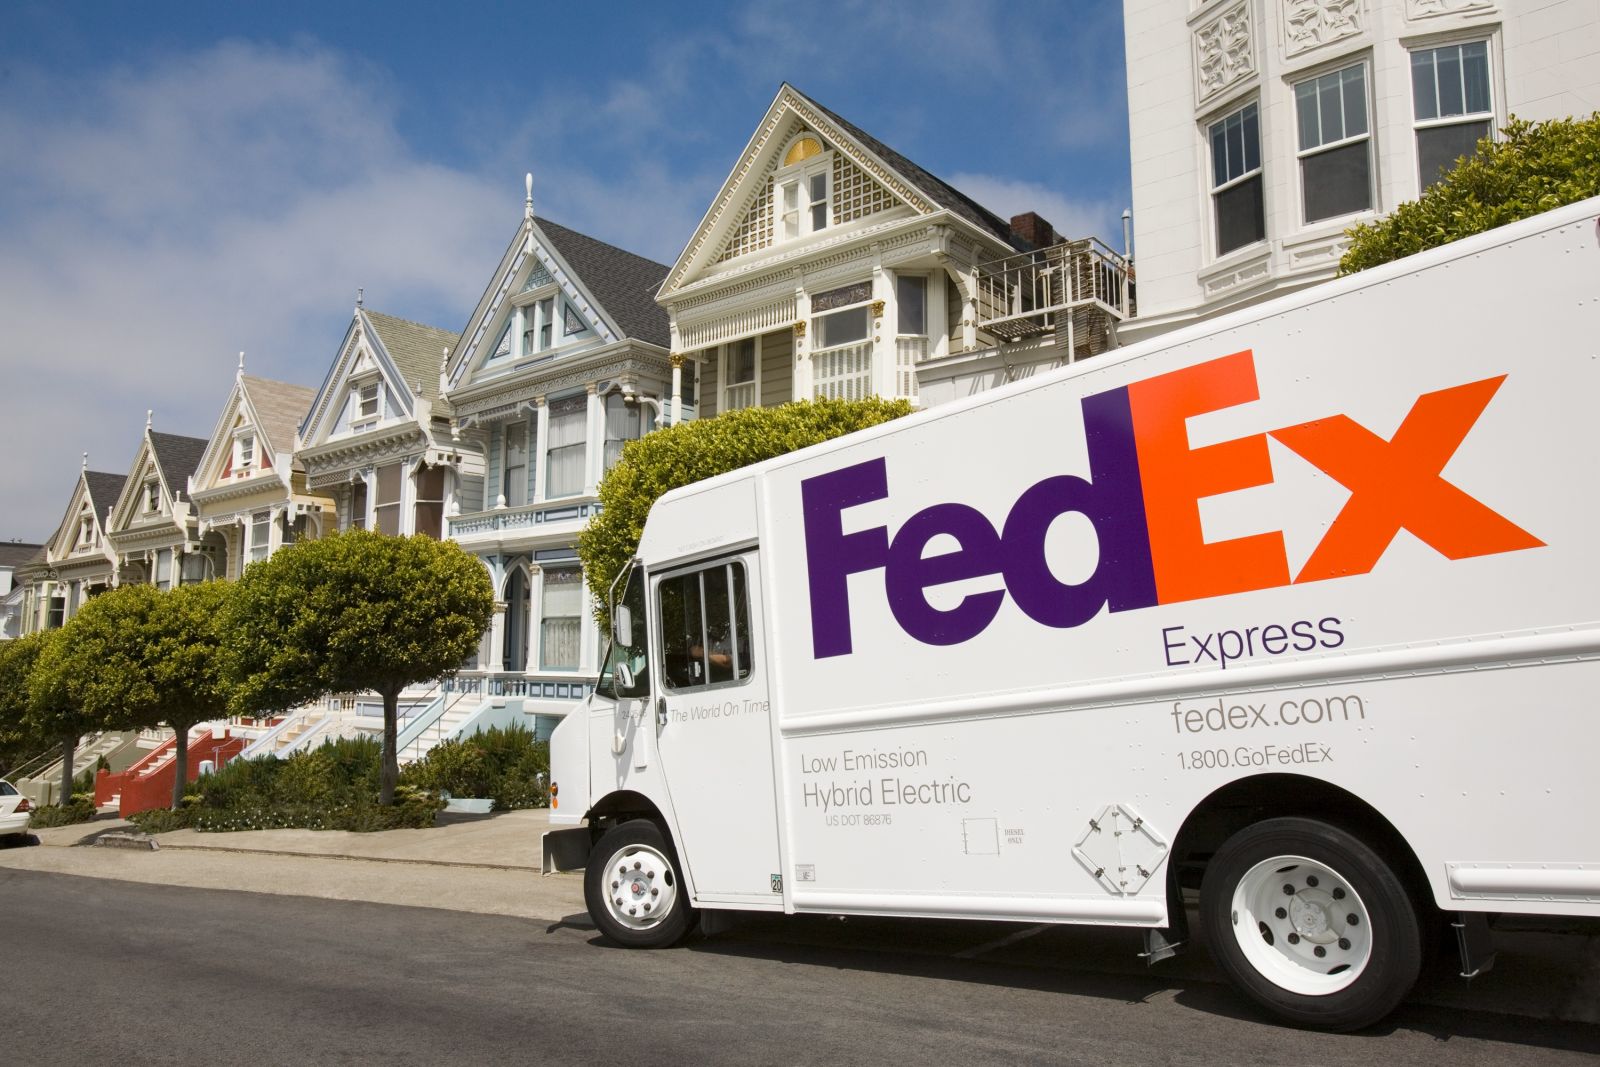 Chuyển phát nhanh Fedex đi Malaysia giá rẻ, chất lượng